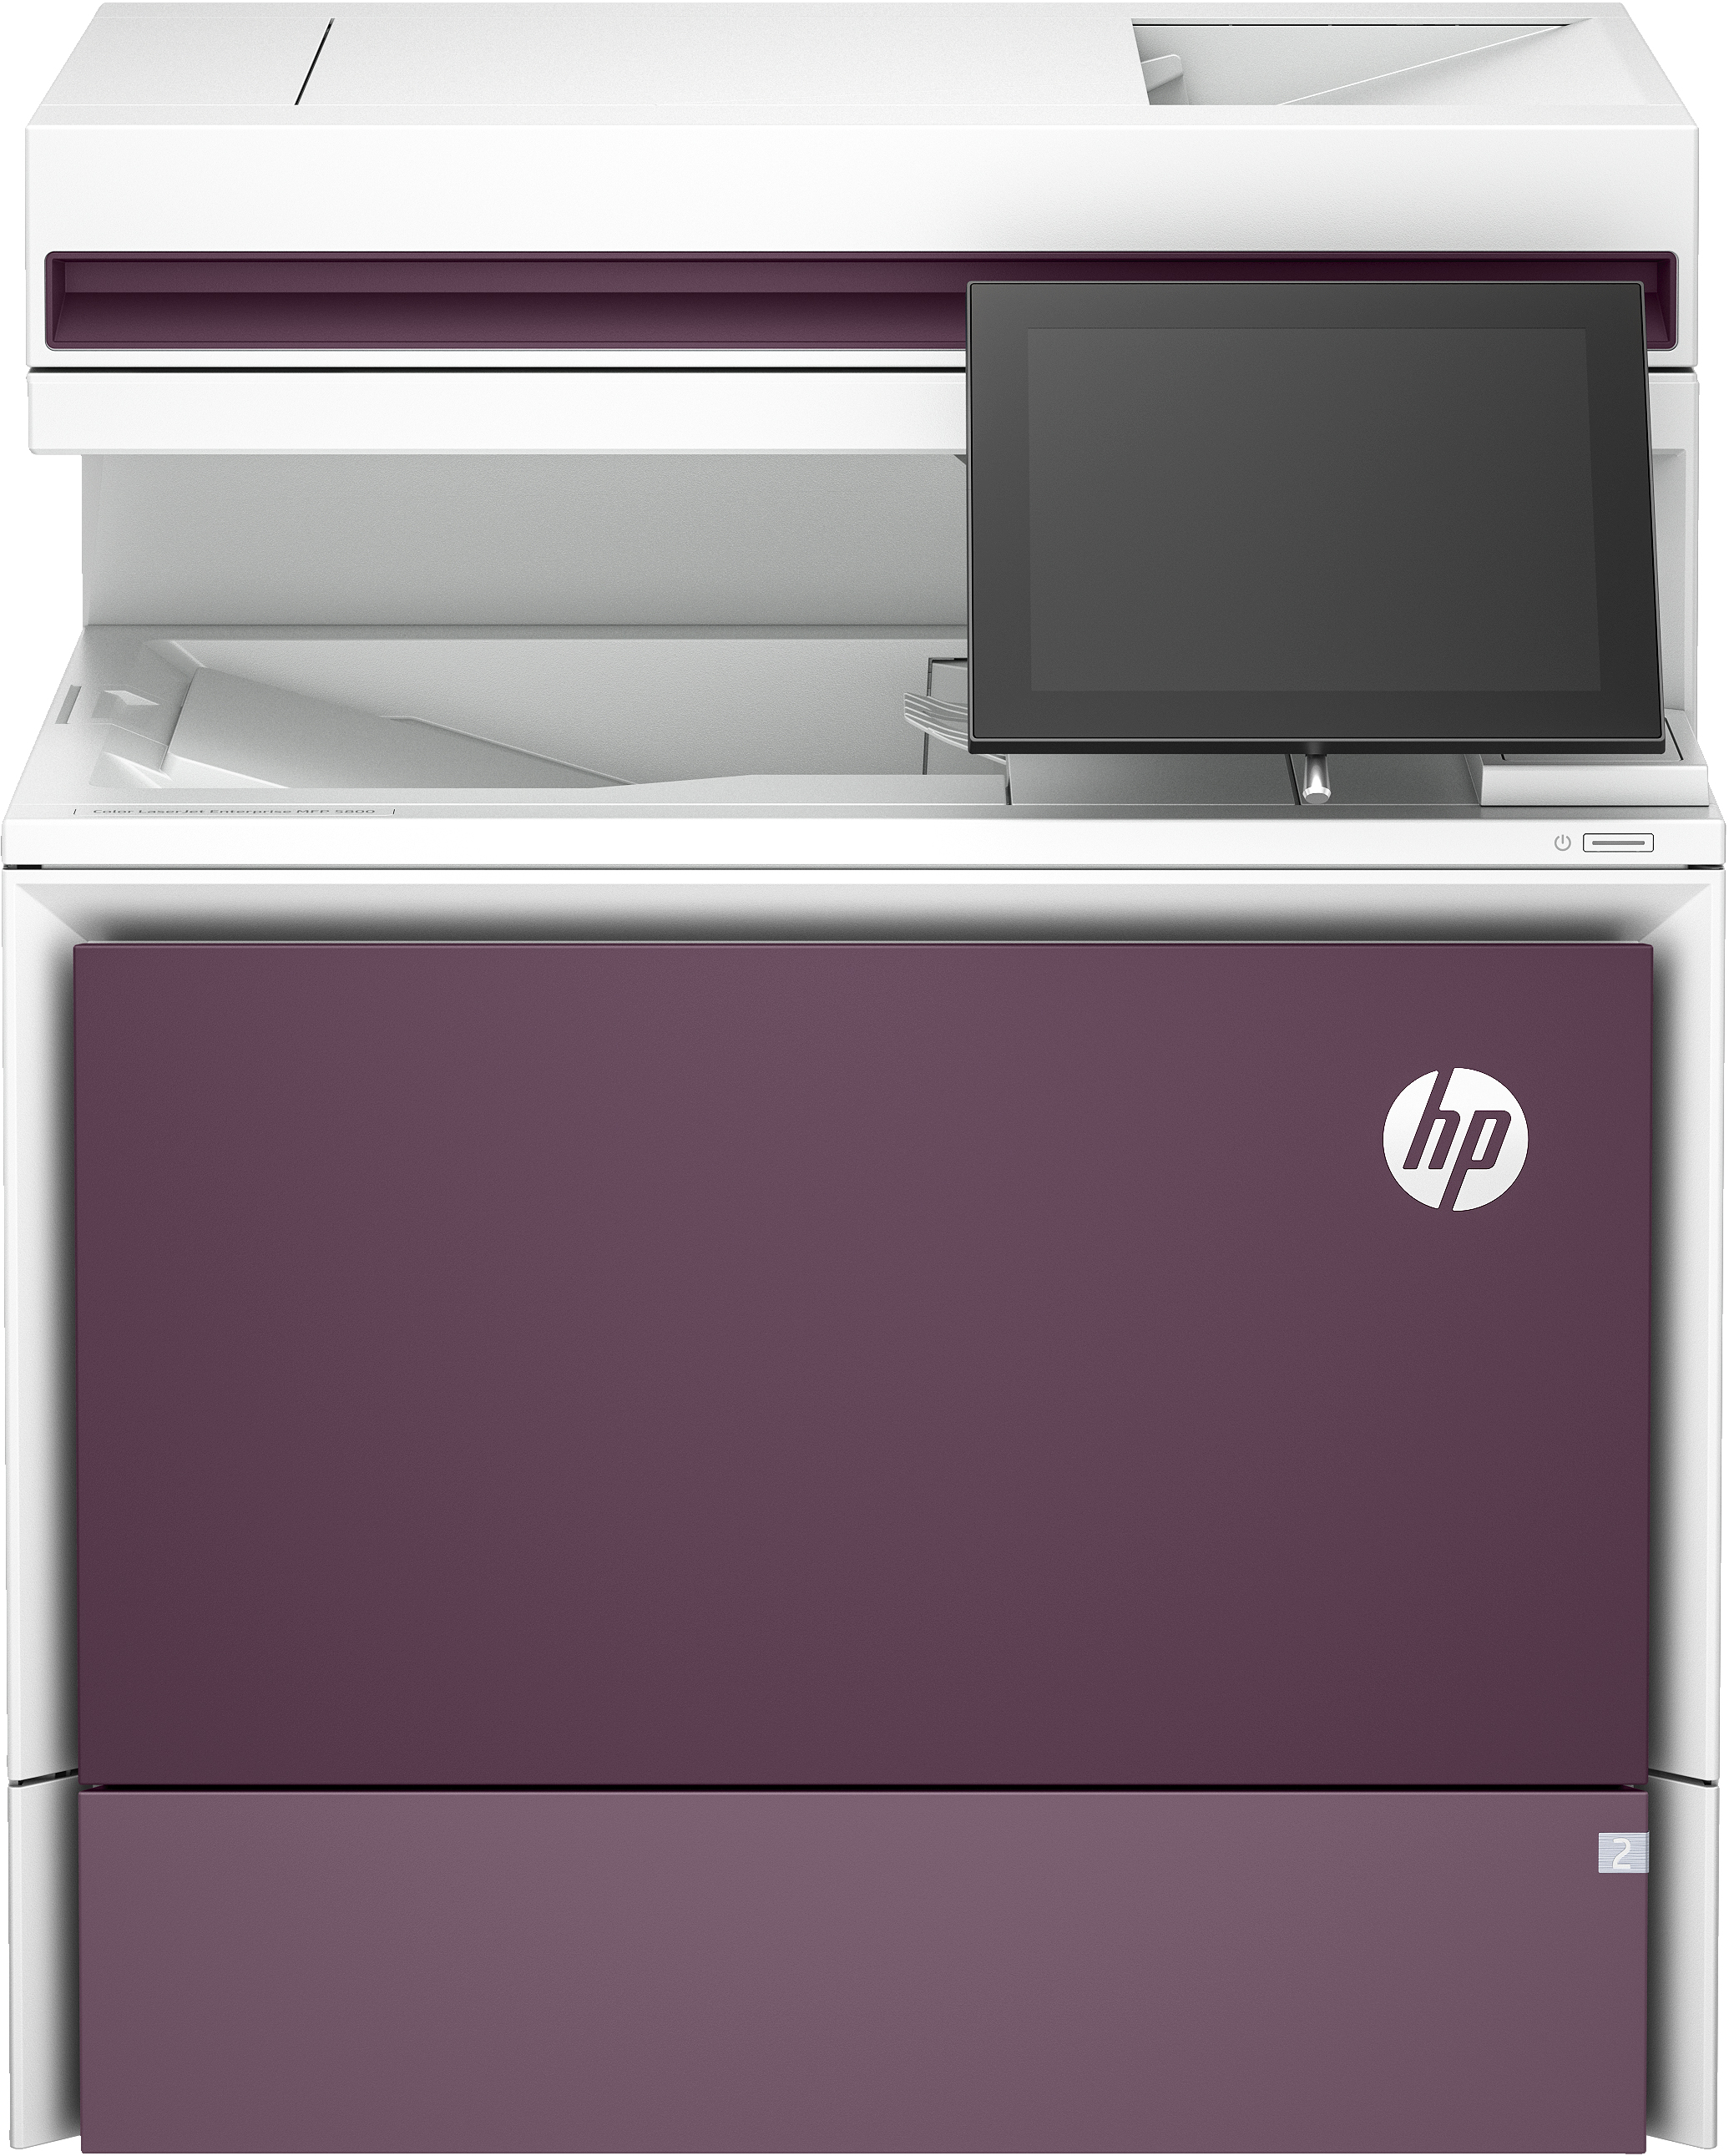 HP Imprimante multifonction Color LaserJet Enterprise 5800dn, Impression, copie, numérisation, télécopie (en option), Chargeur automatique de documents. Bacs haute capacité en option. Écran tactile. Cartouche TerraJet